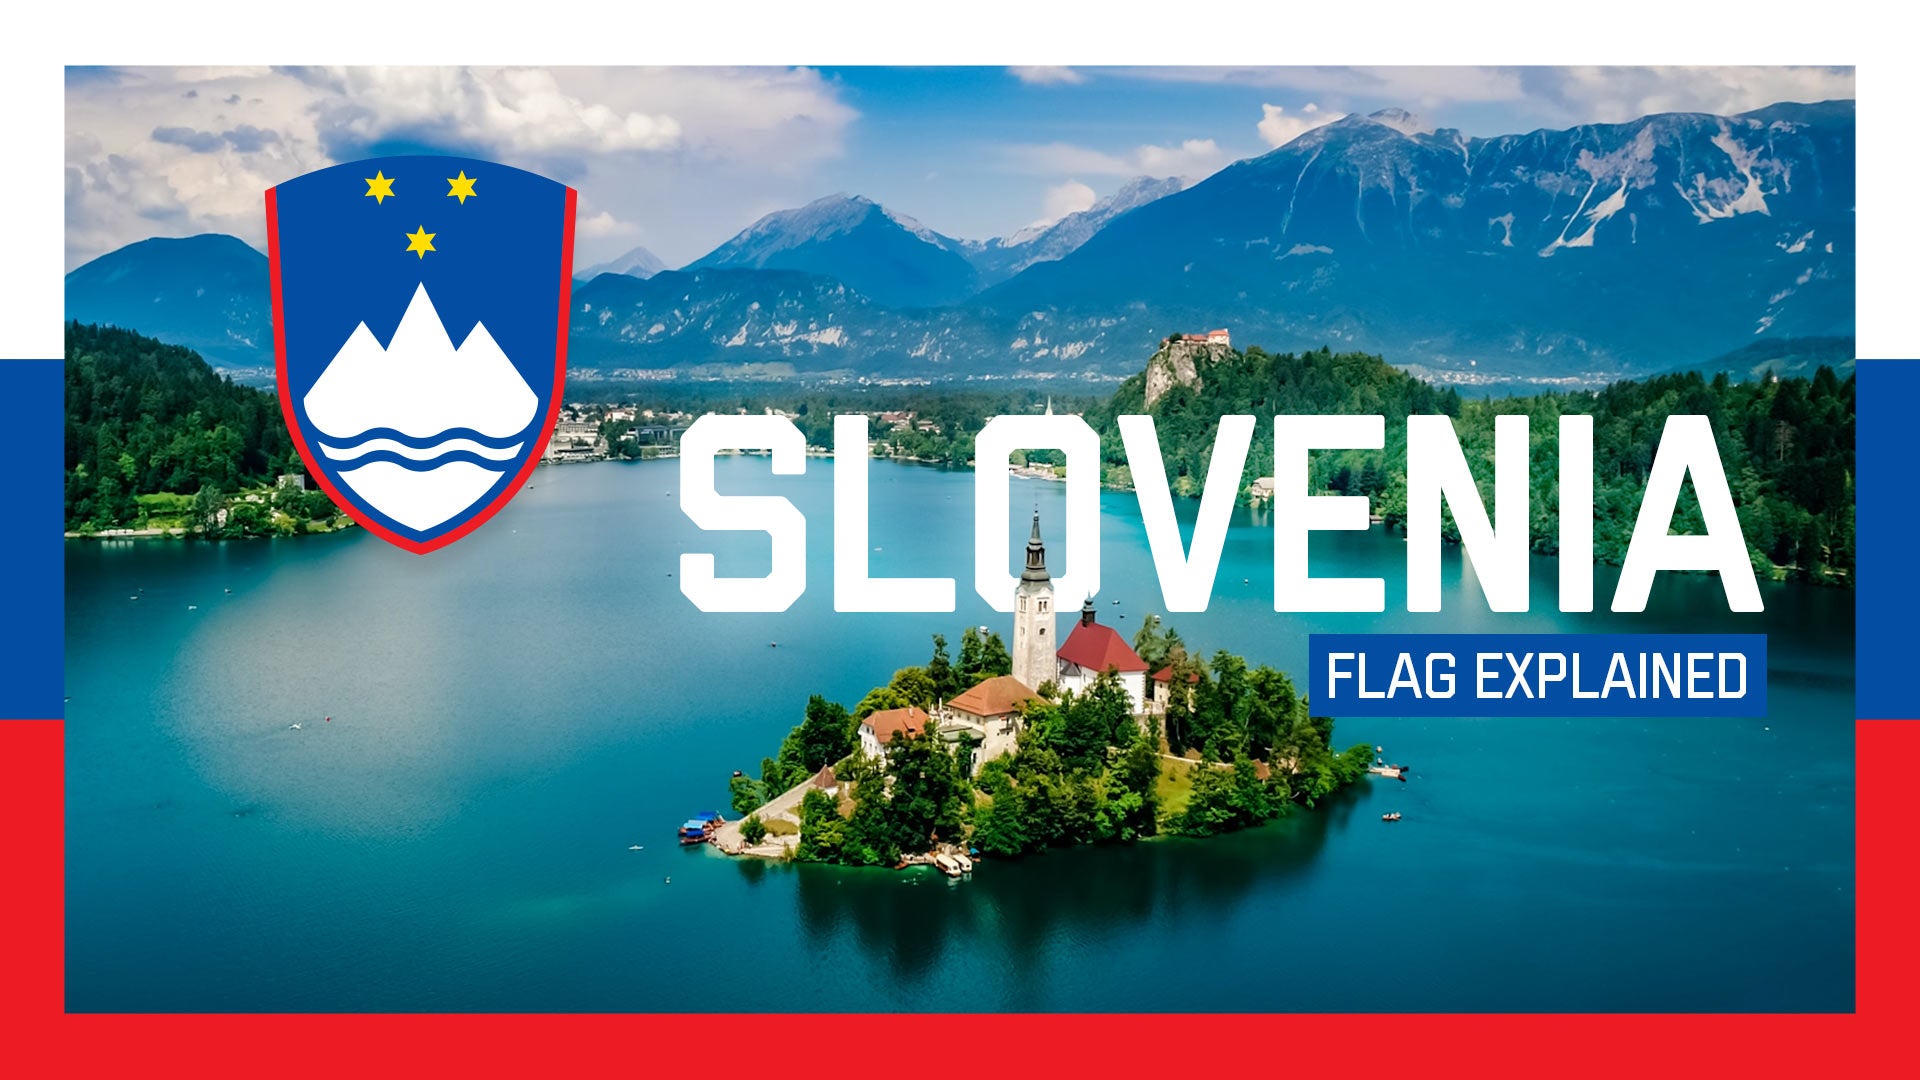 Slovenia's Flag Explained